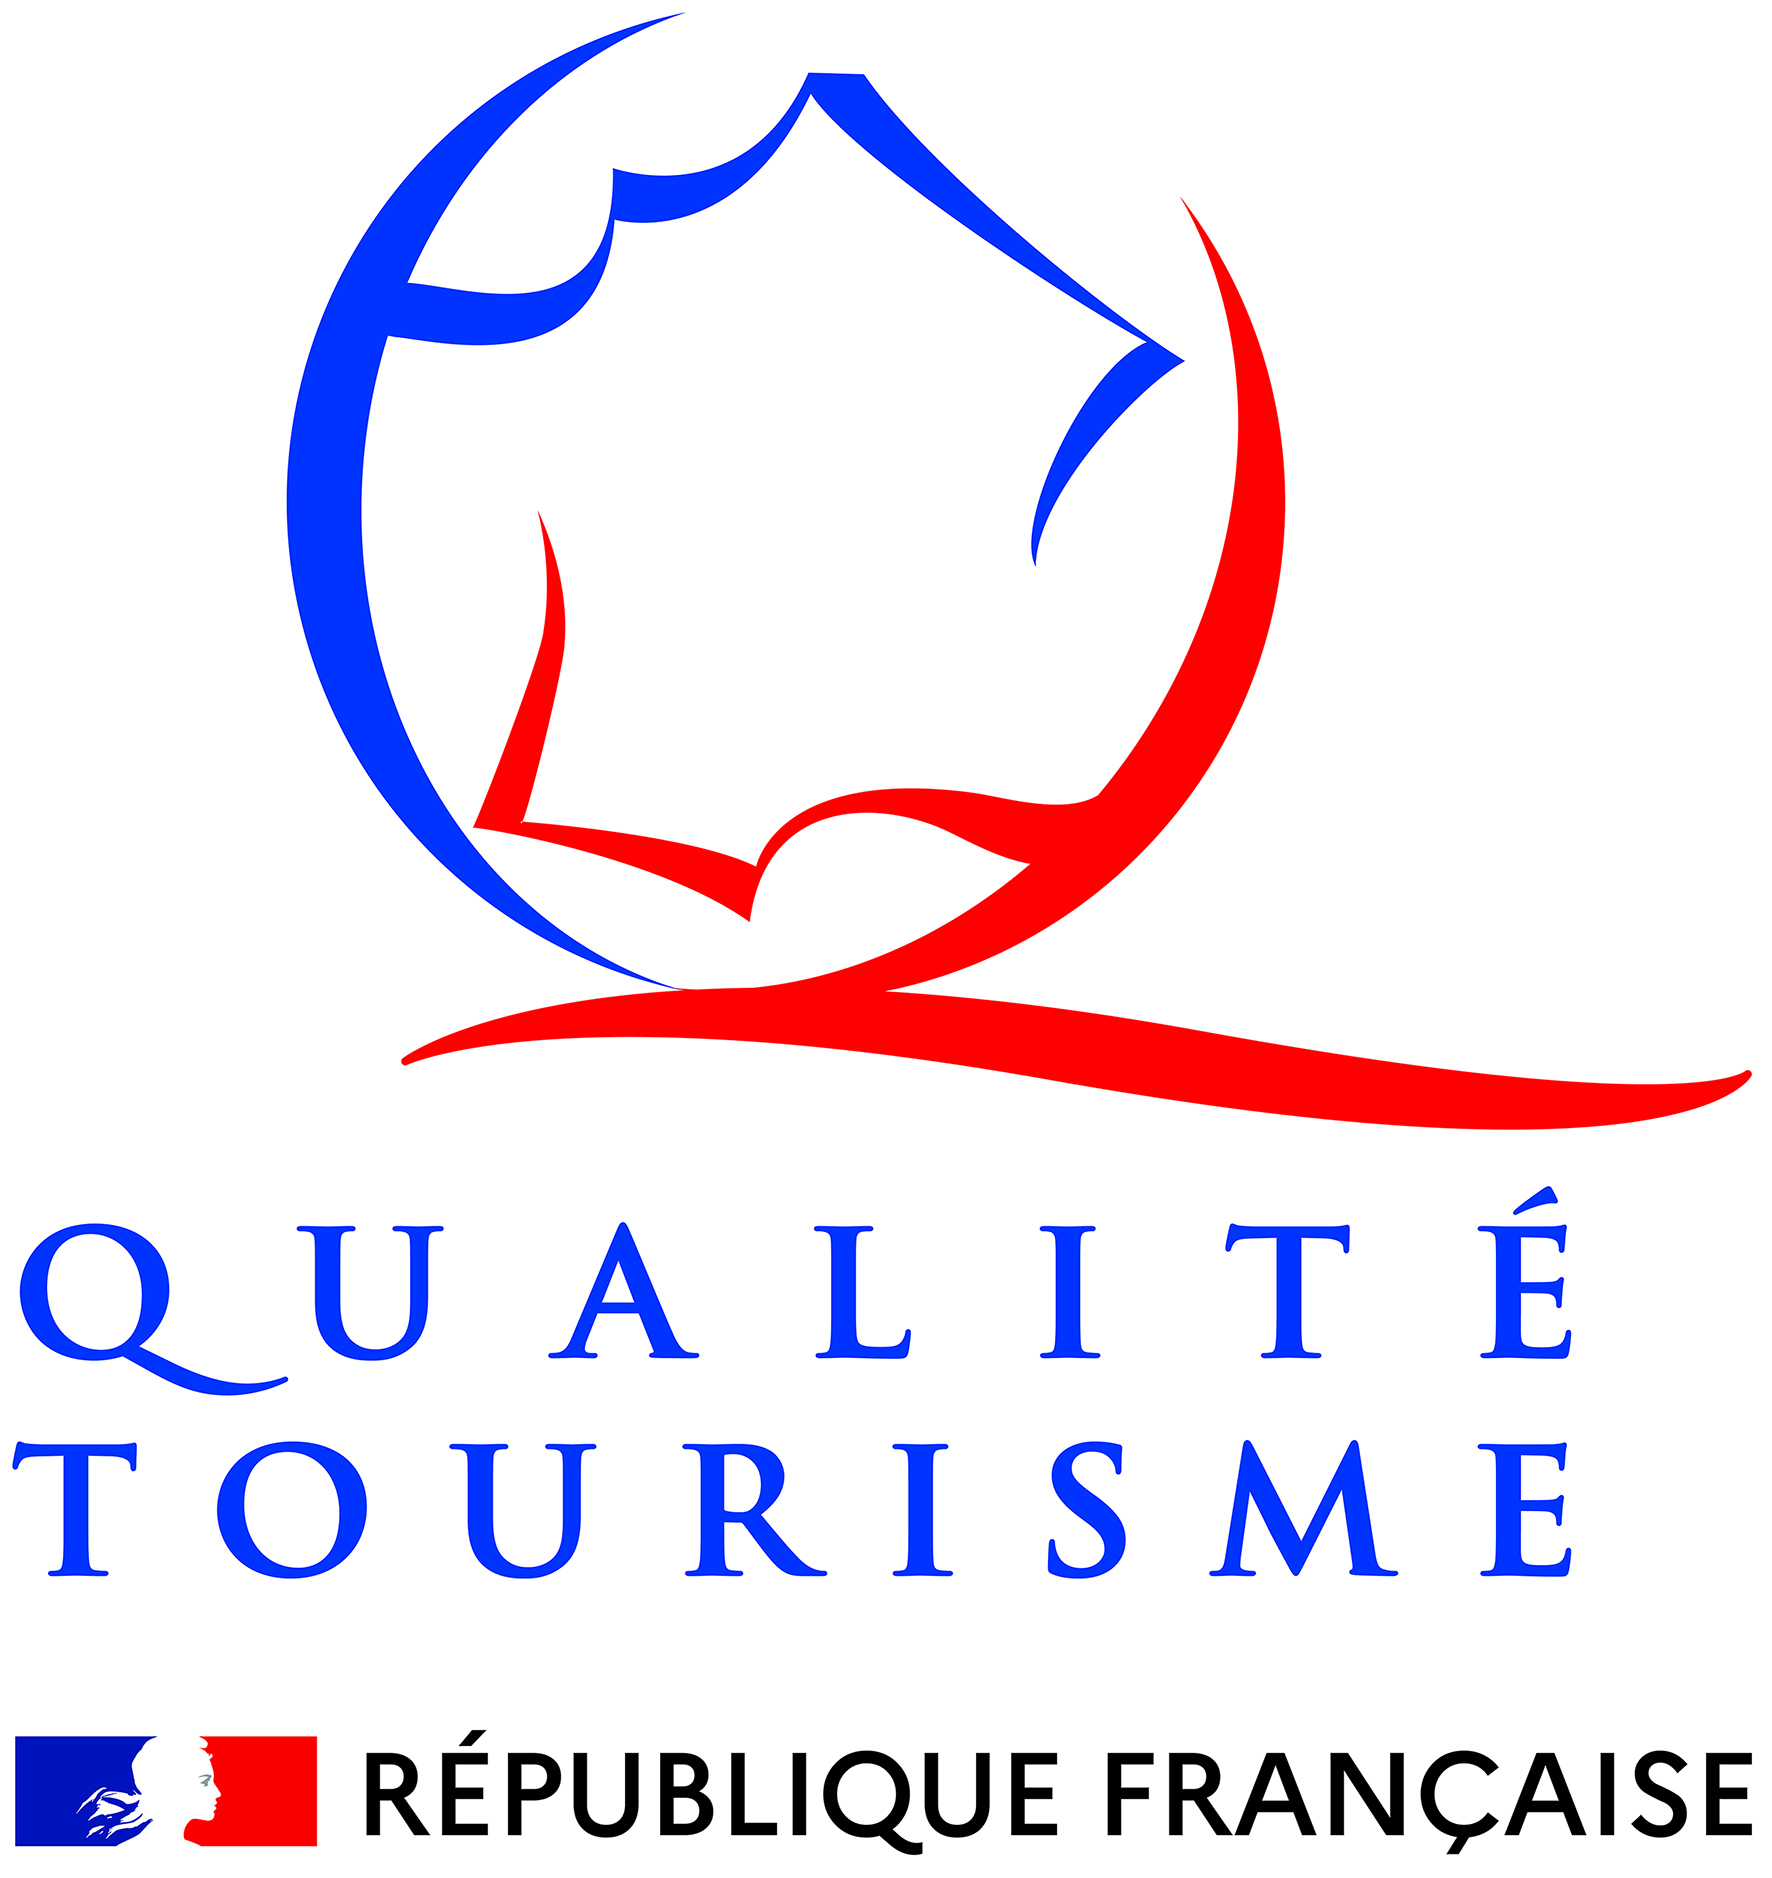 Quality tourisme